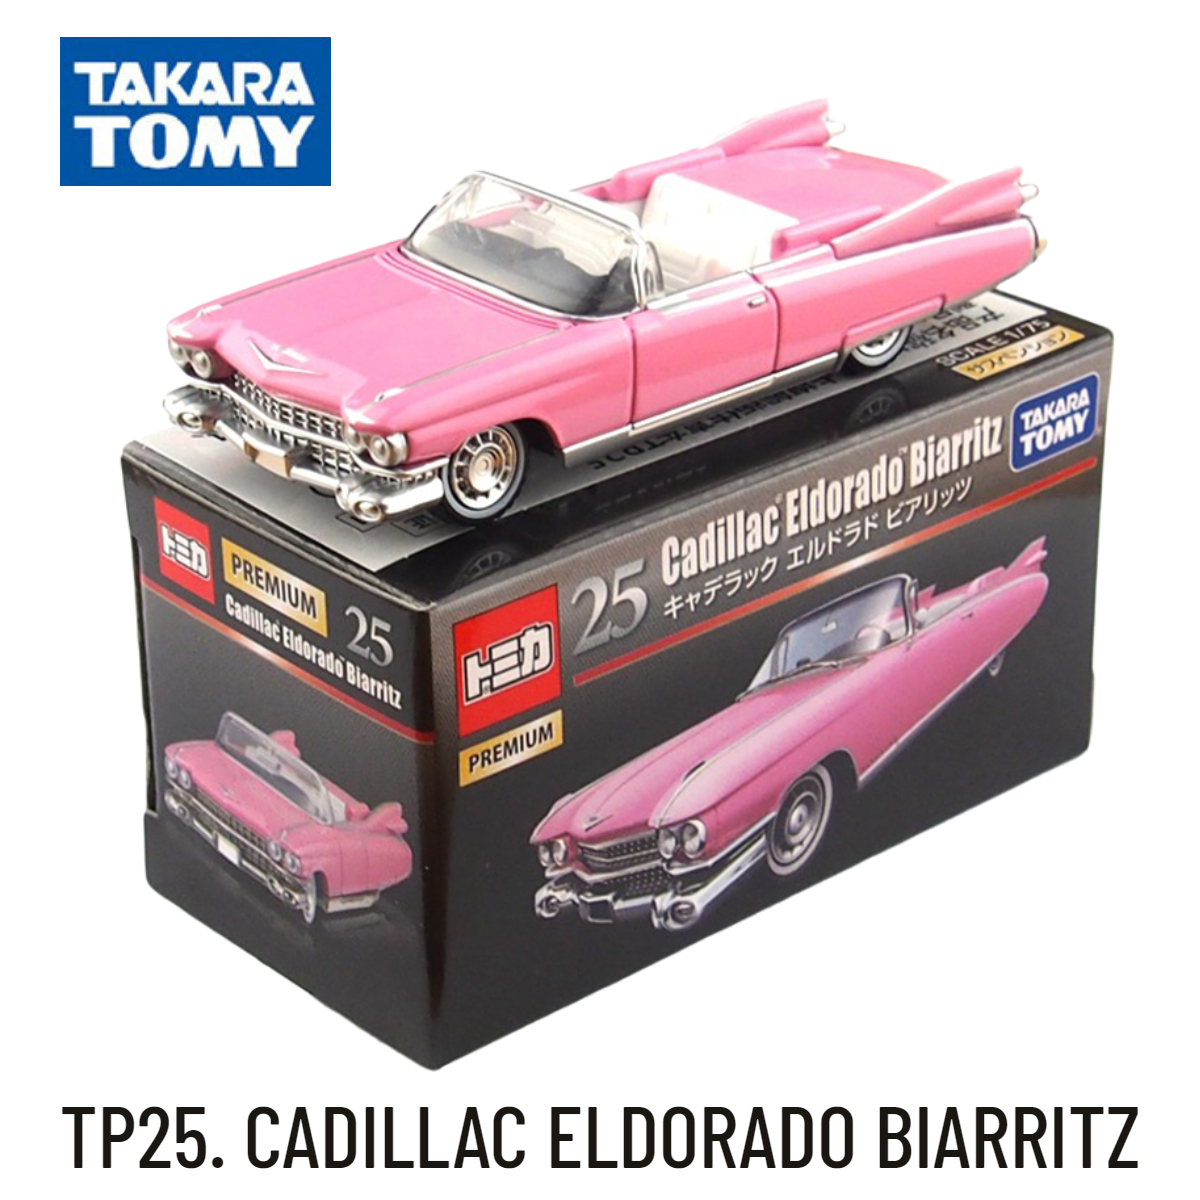 Takara Tomica Cao Cấp Tp25, Cadillac Eldorado Biarritz Quy Mô Xe Mô Hình